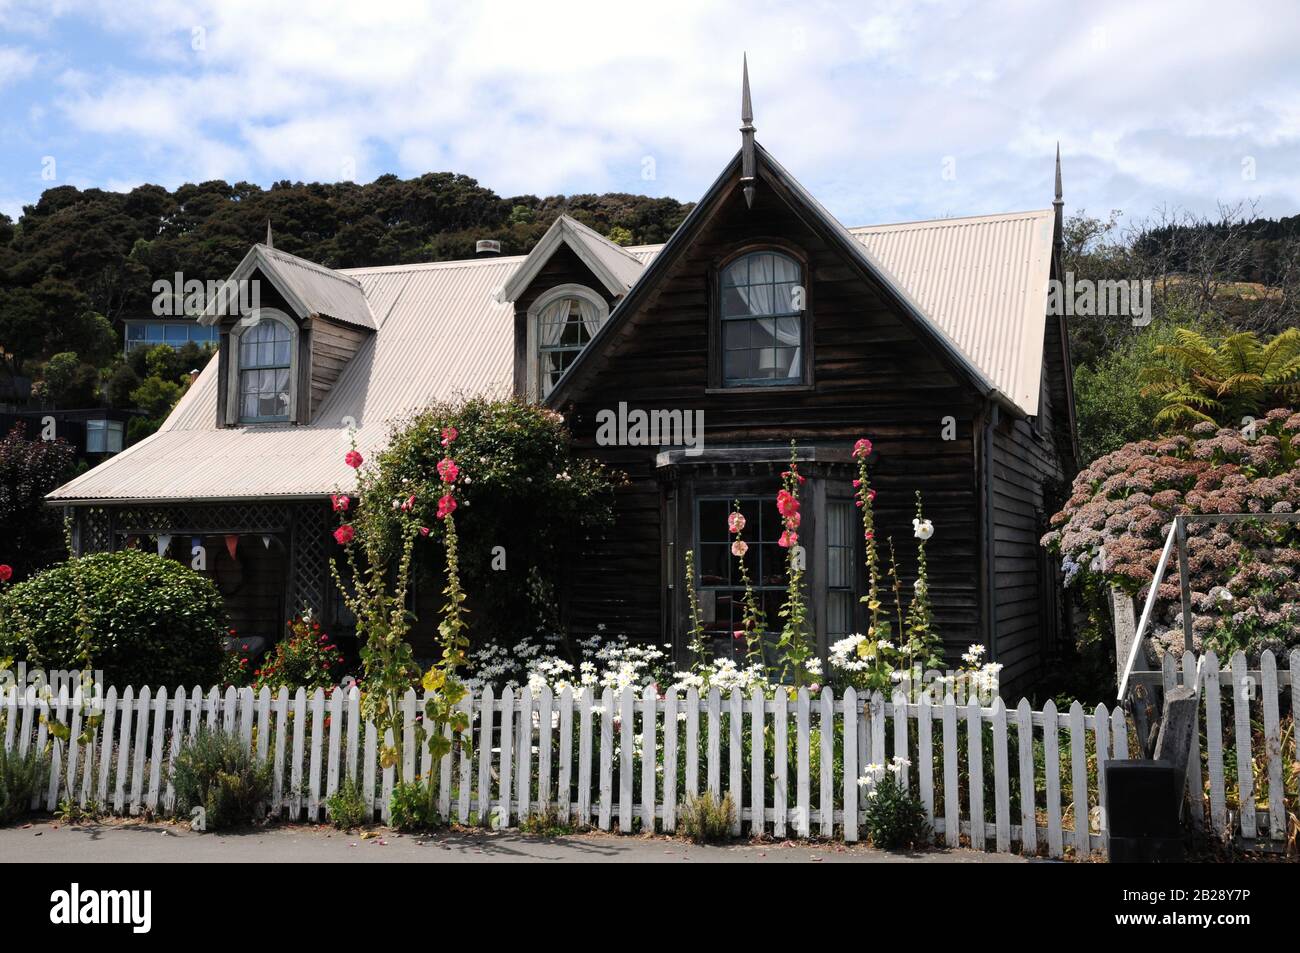 Maison historique du XIXe siècle à colombages à Akaroa, petite ville historique de la péninsule Banks, île du Sud, Nouvelle-Zélande. Banque D'Images